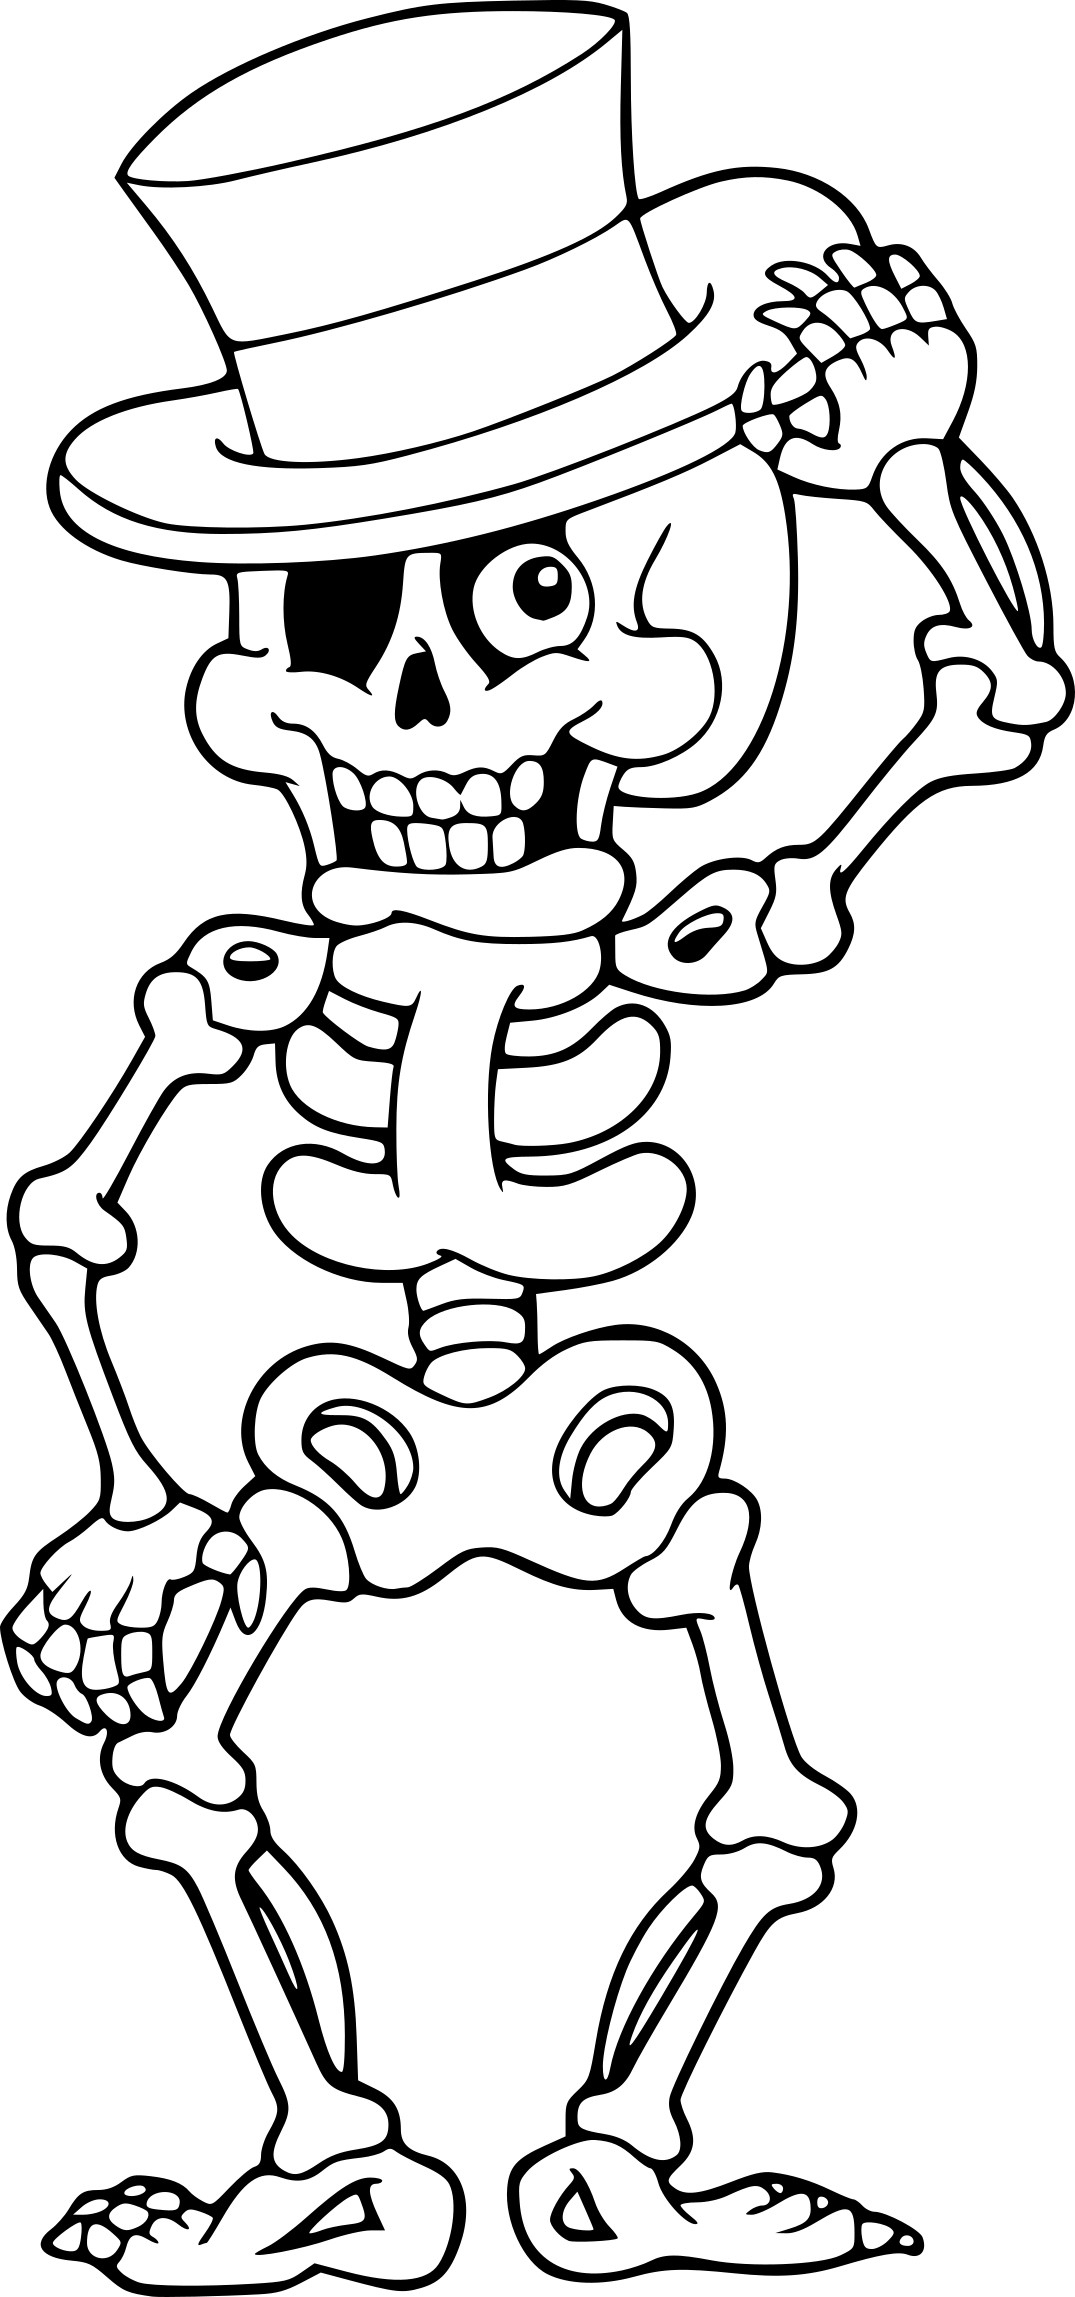 Coloriage Squelette Halloween À Imprimer innen Dessin Coloriage A Imprimer